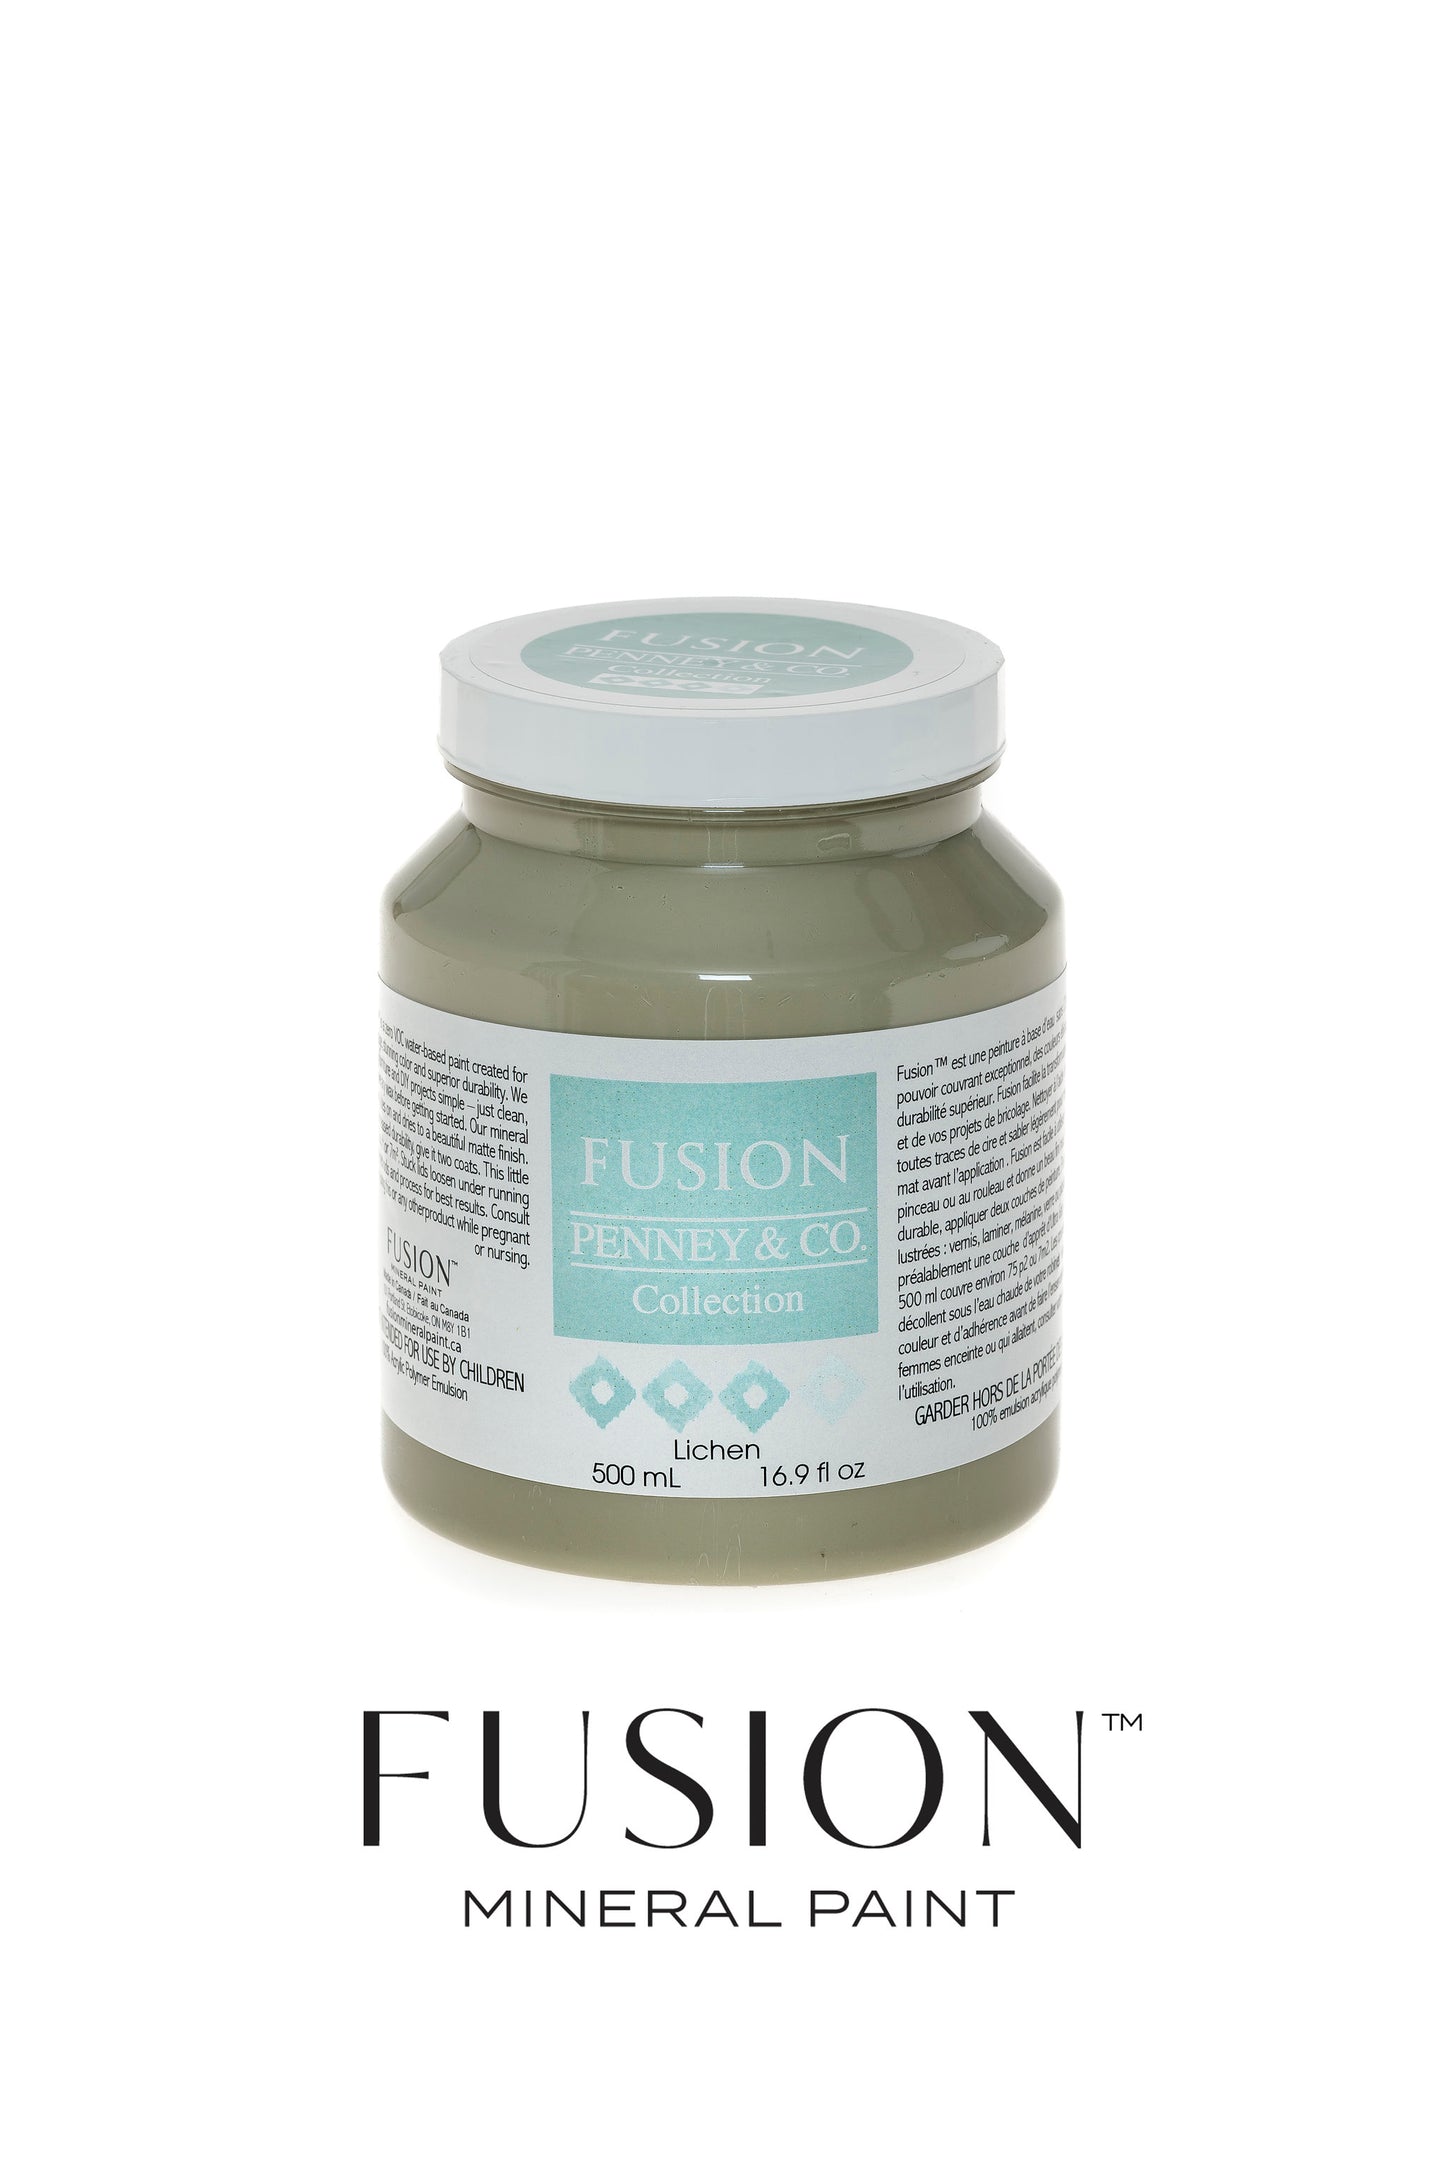 Lichen by Fusion